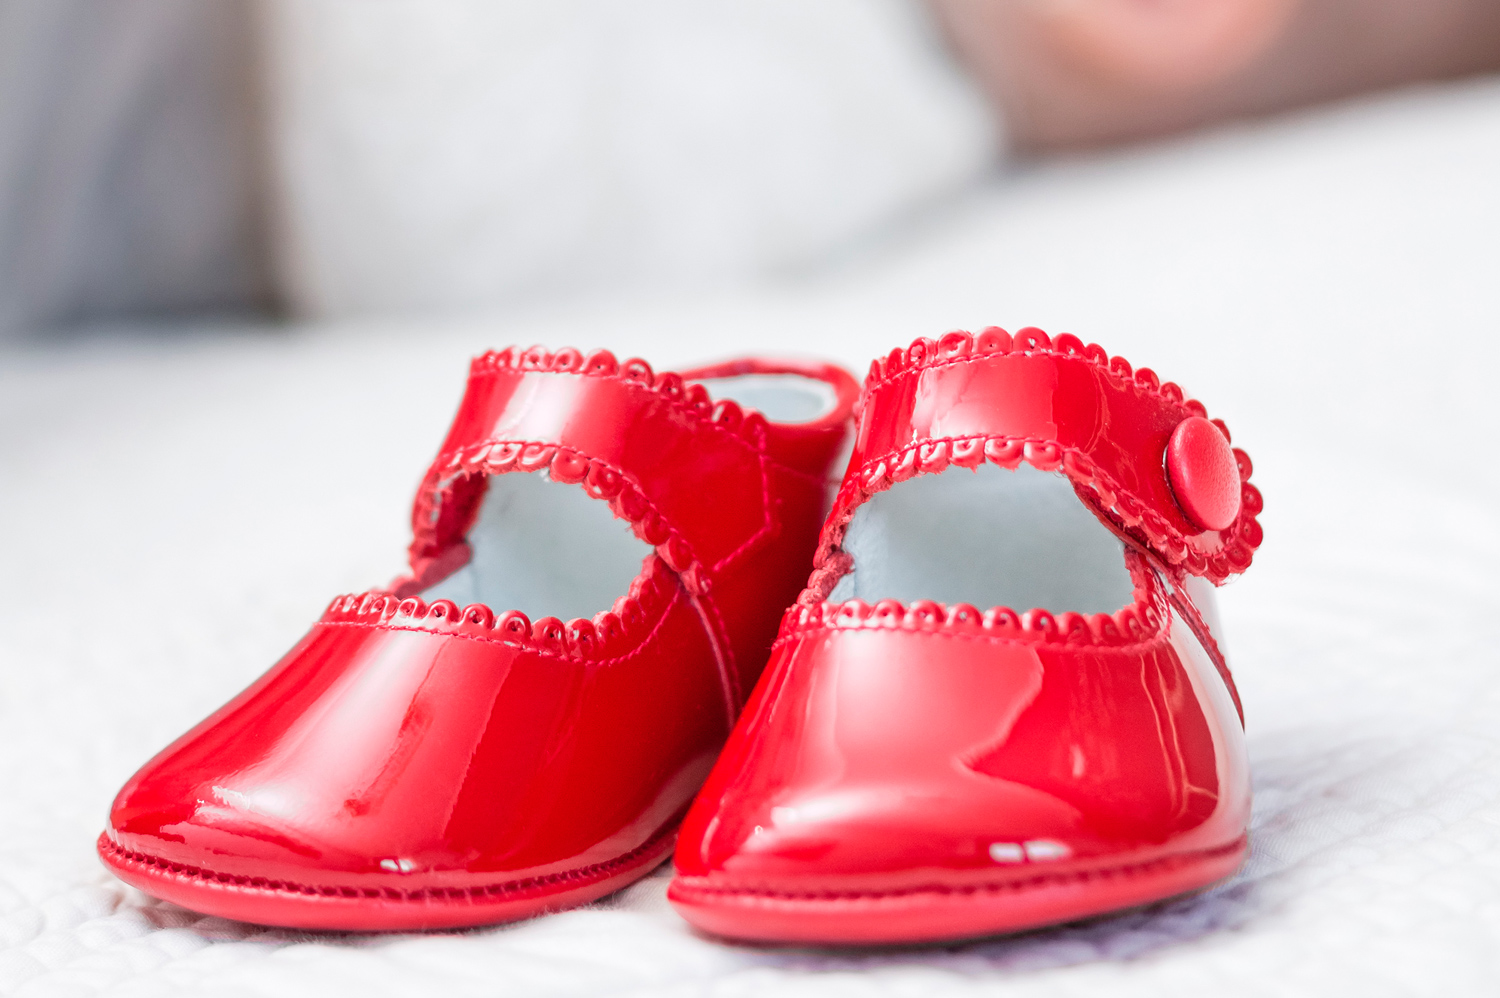 Zapatos para bebés? Recomendaciones sobre cómo y cuándo calzarlos